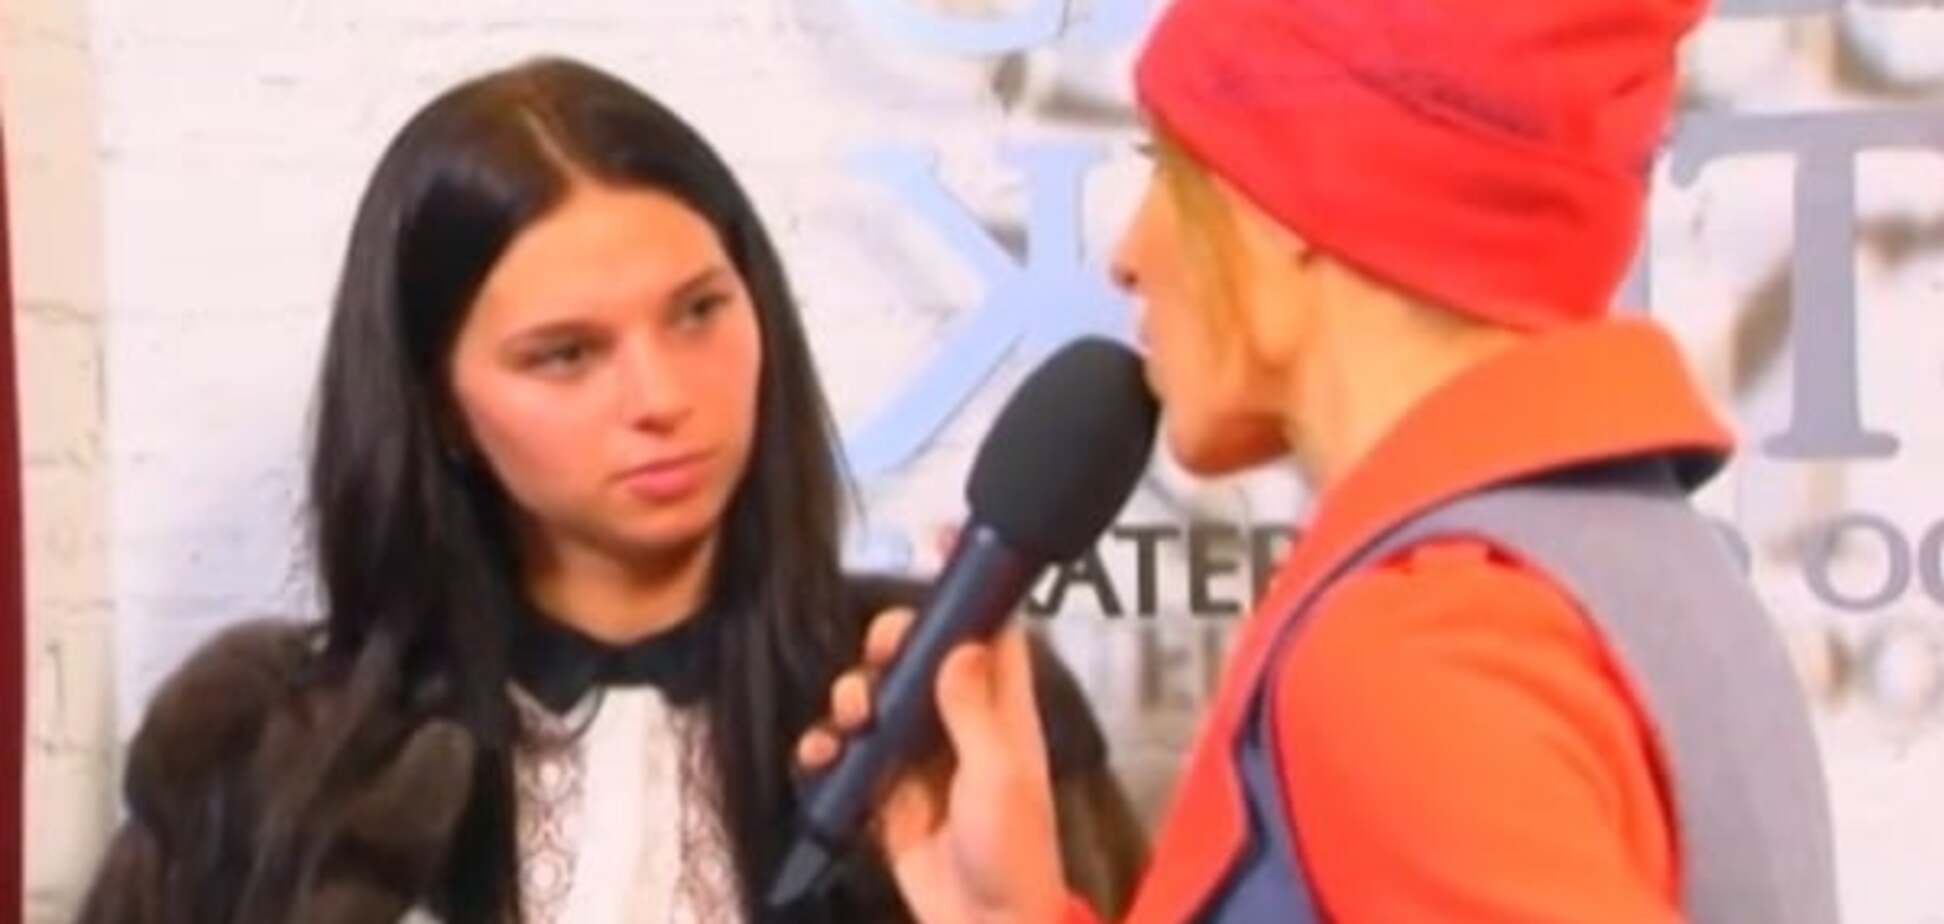 Прощай, оккупация: жена боксера Усика заявила о желании покинуть Крым